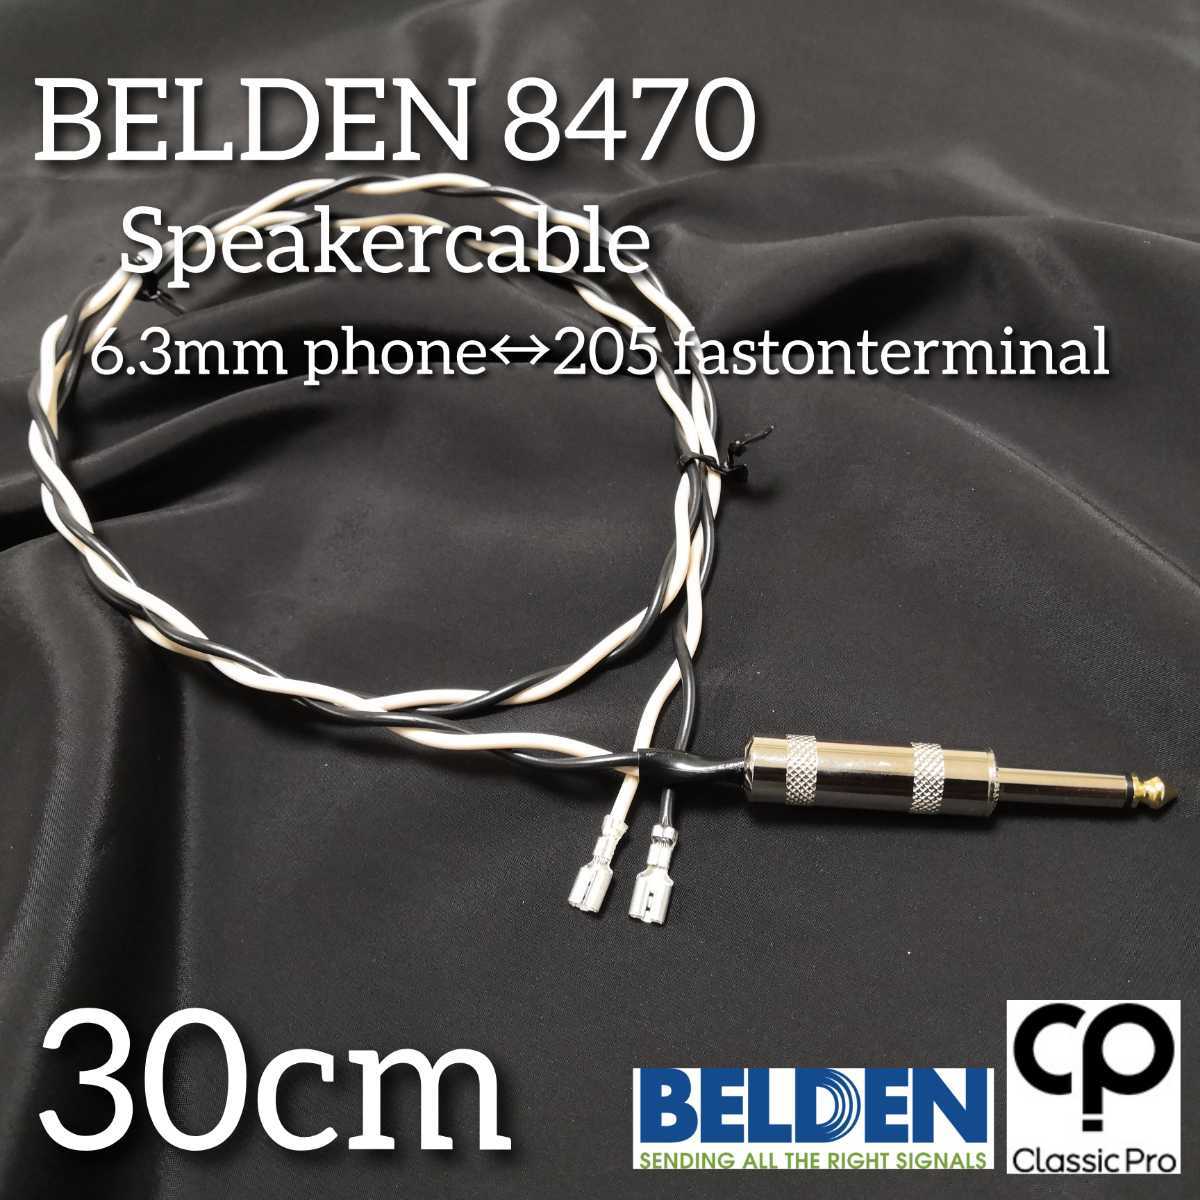 ( новый товар ручная работа ) спикер-кабель BELDEN8470 30cm S phone - быстрый n комбоусилитель. комплектация выше .!85s205